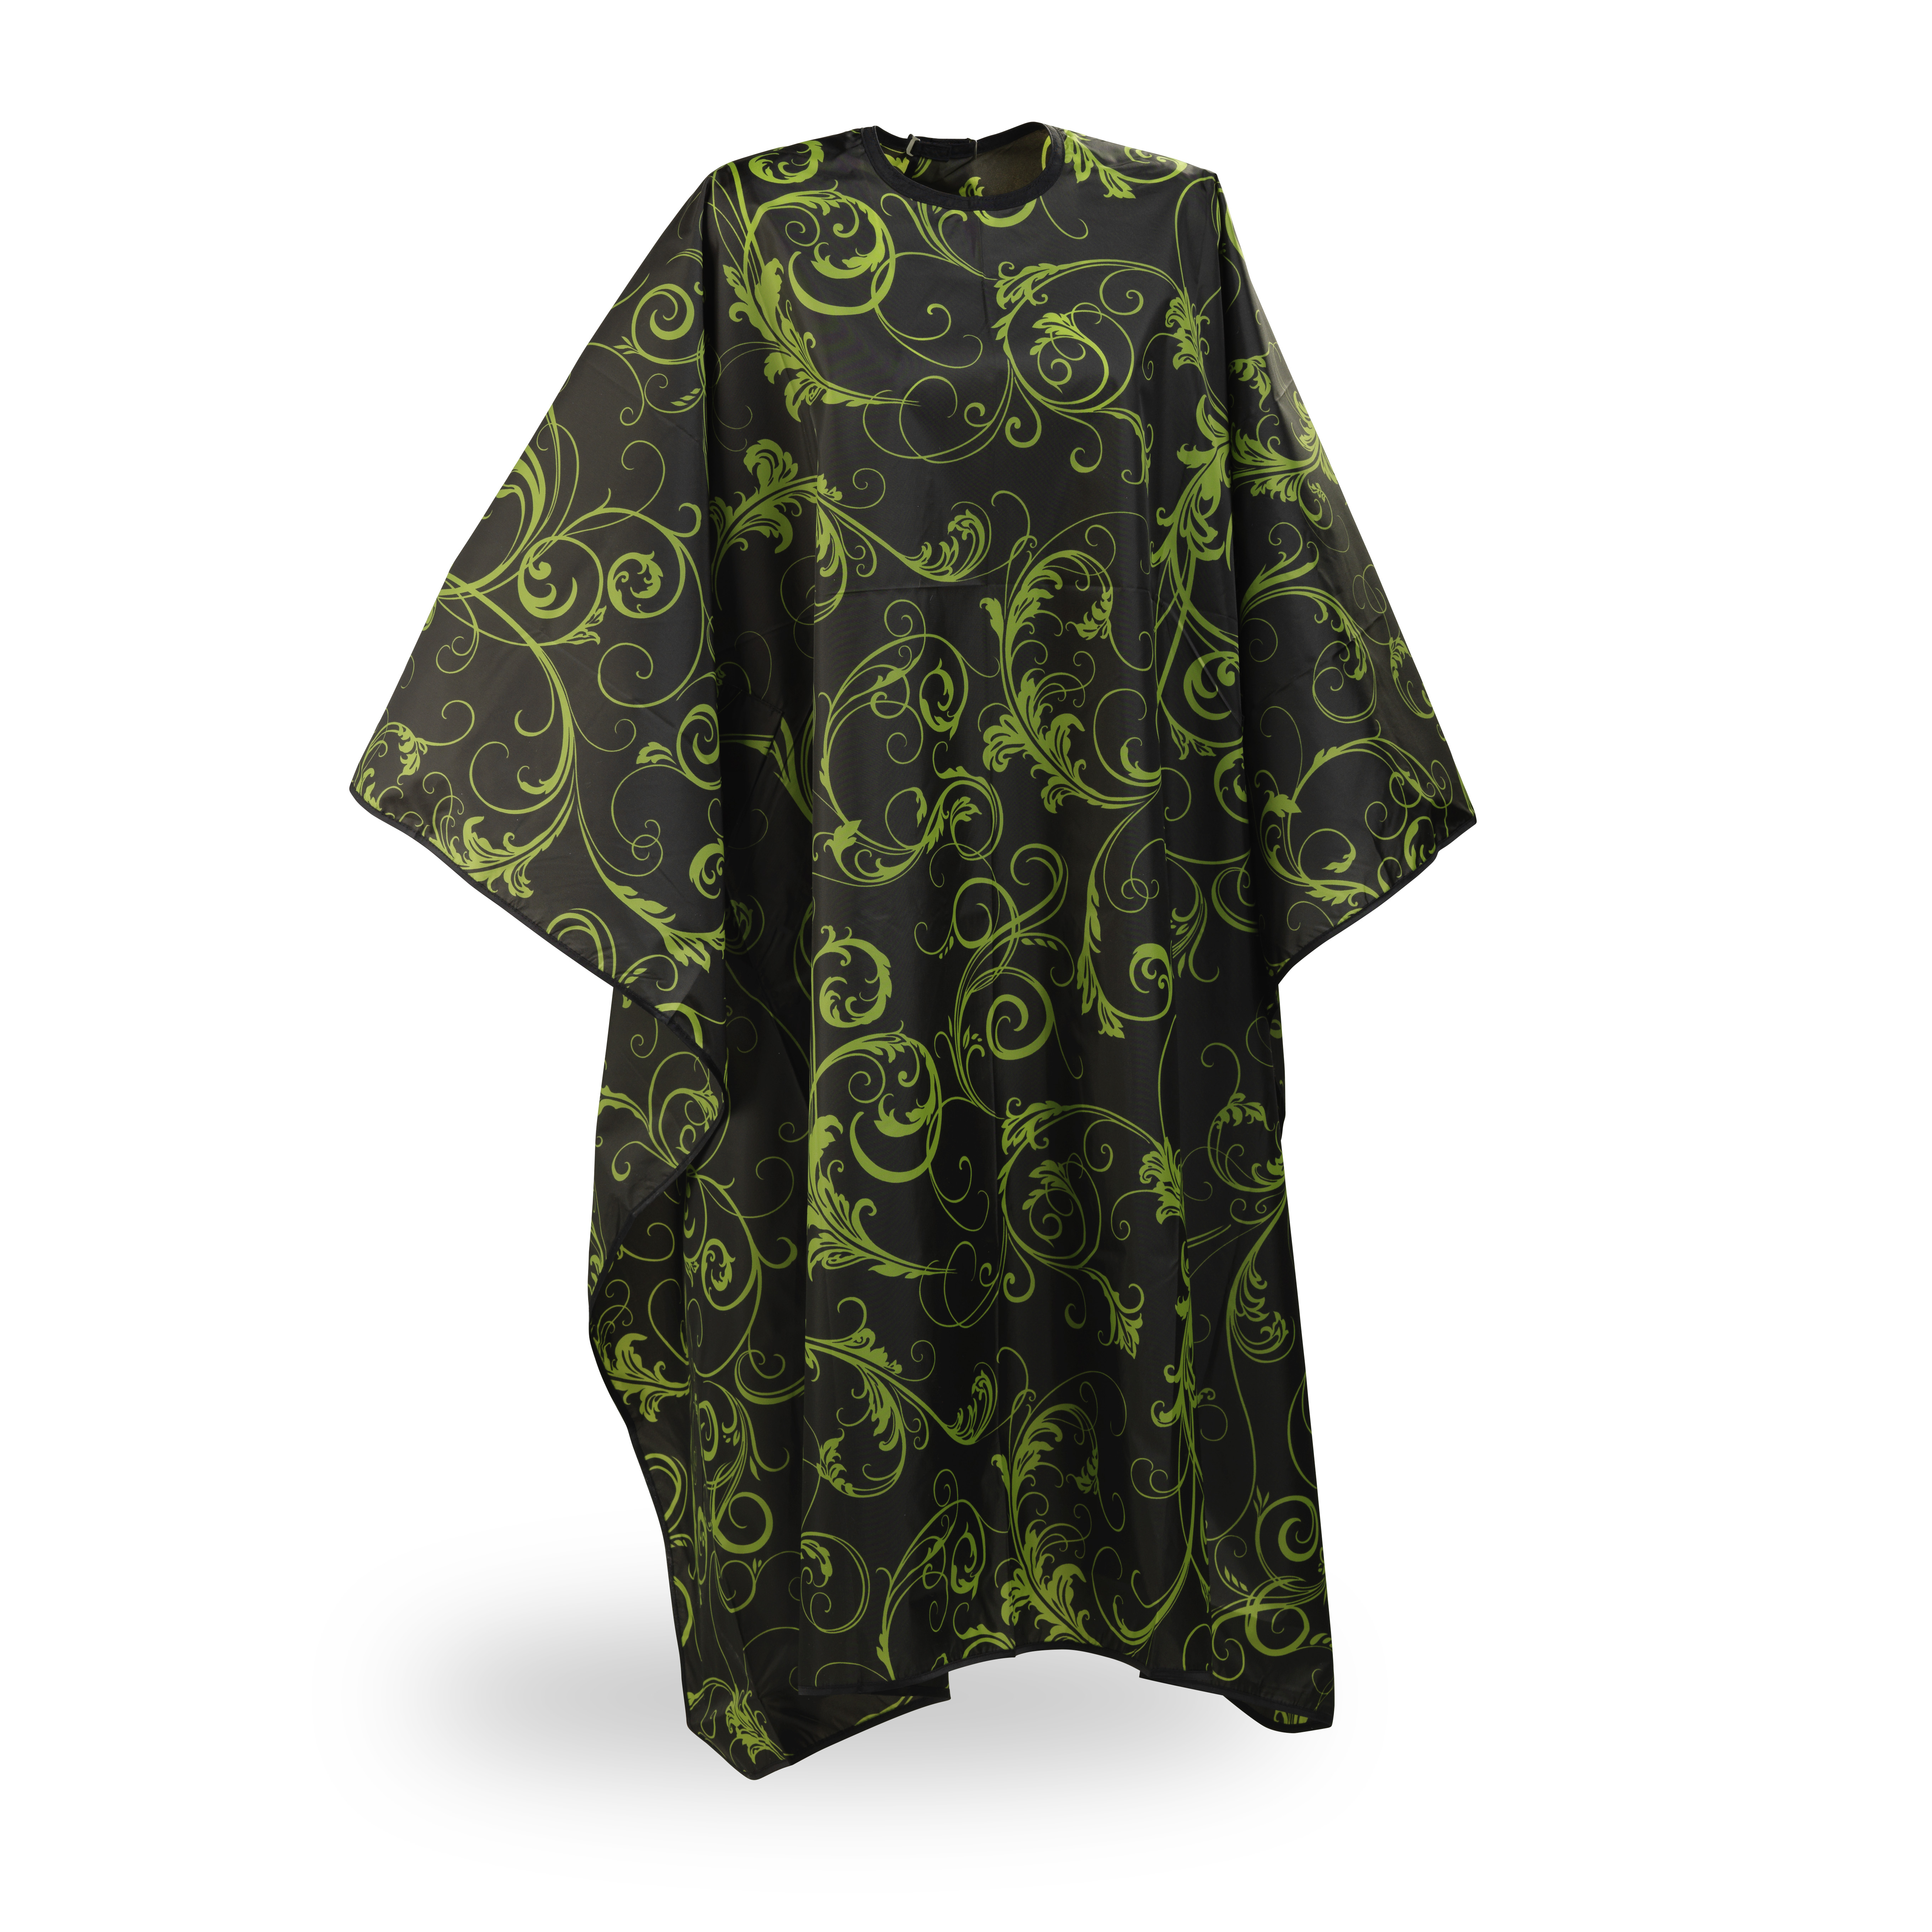 Wako Ivy cape, green 5614 - kadeřnická pláštěnka na háček